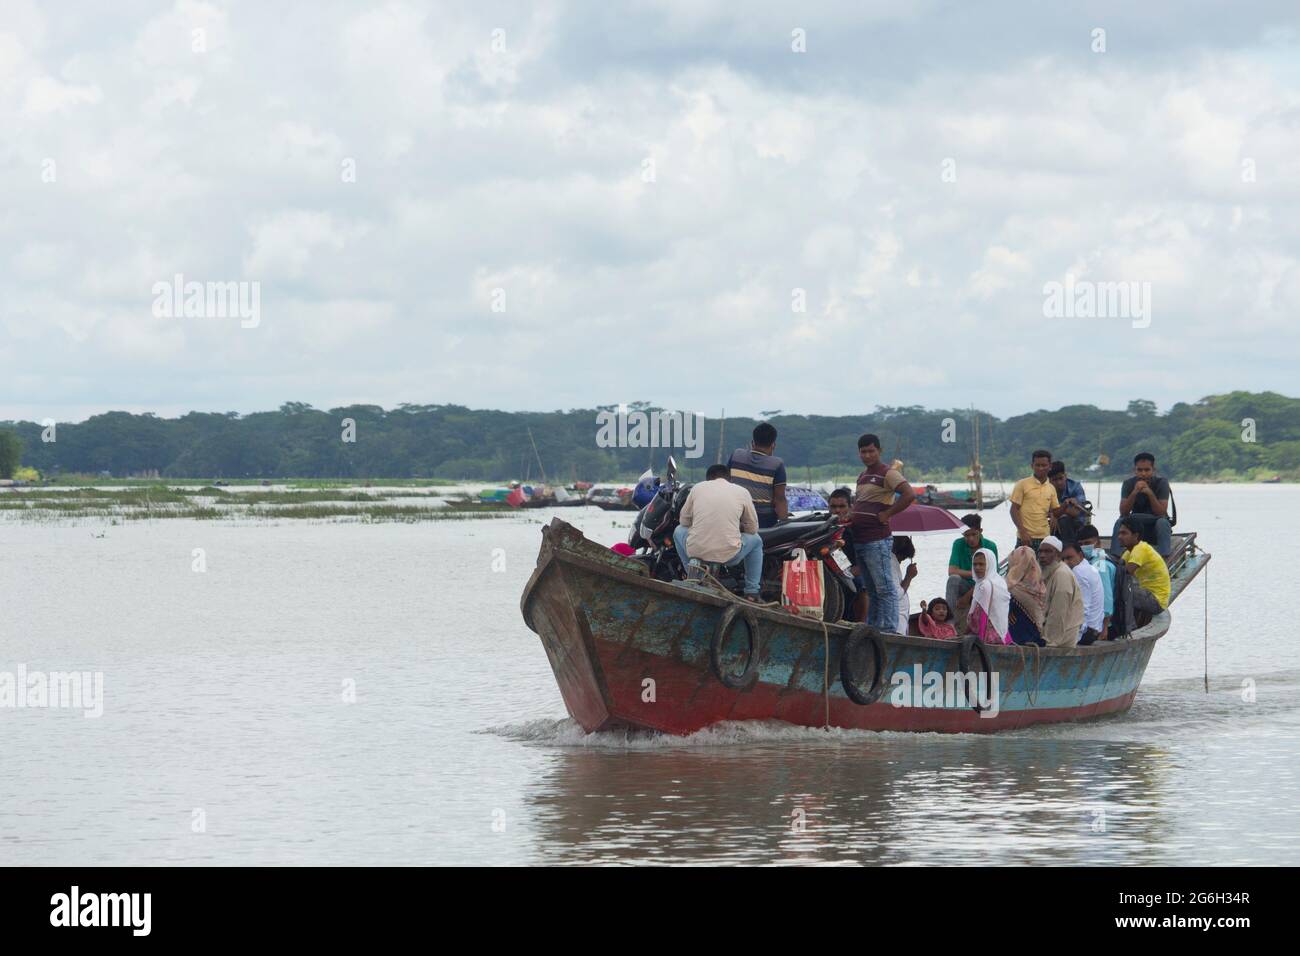 Septembre 12 2020, Babuganj, Barisal, Bangladesh.UN bateau en acier transportant des personnes à travers la rivière. Banque D'Images